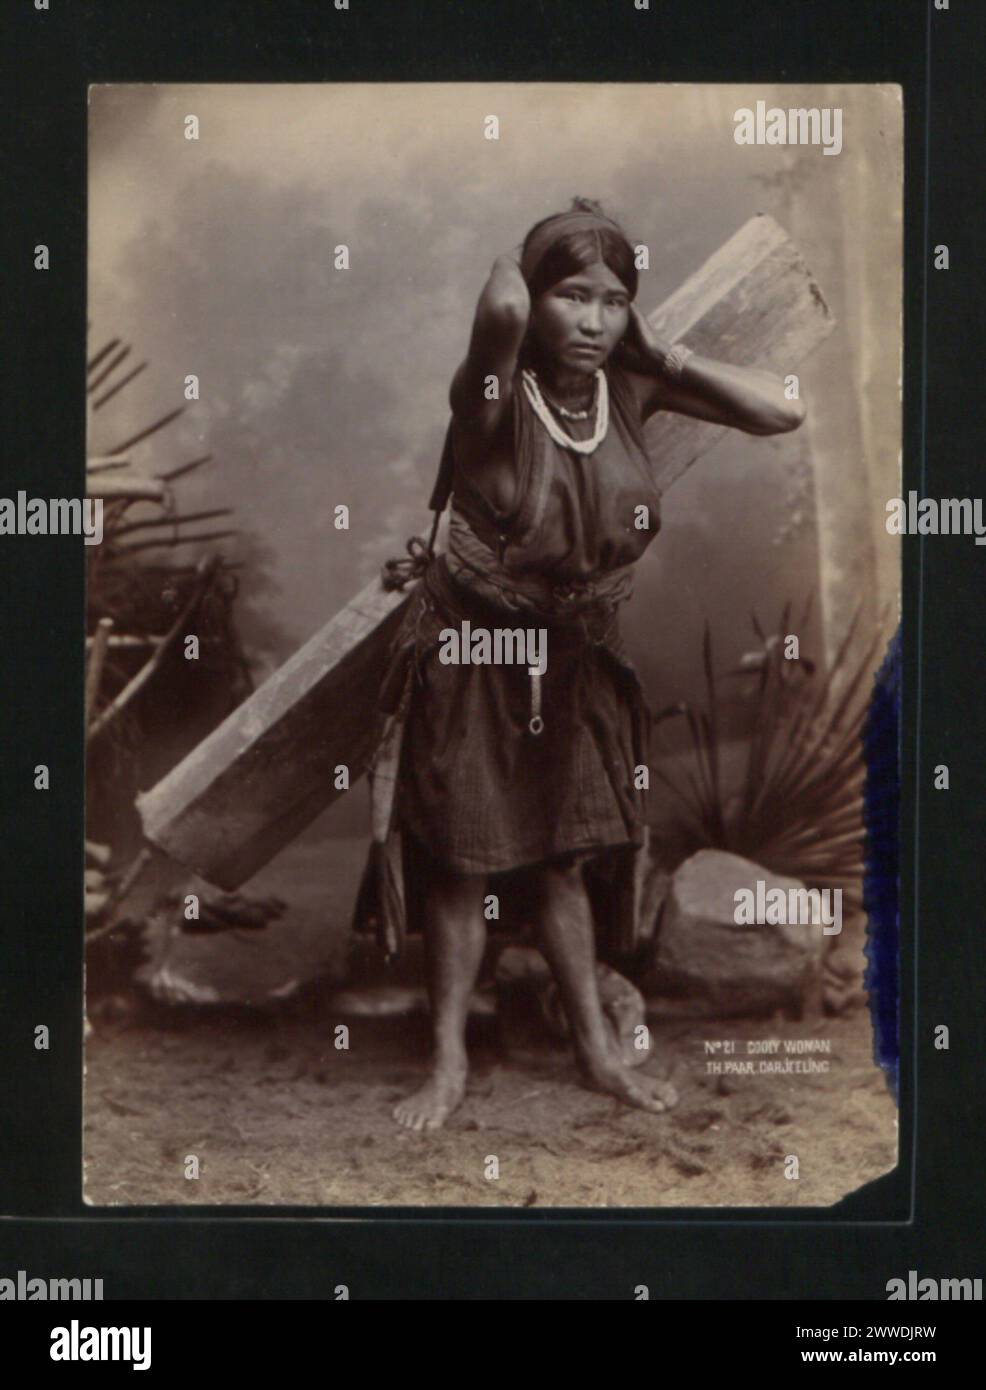 Description: No21 Cooly woman Th Paar, Darjeeling. Location: Darjeeling, India india, asia, darjeeling, asiathroughalens Stock Photo